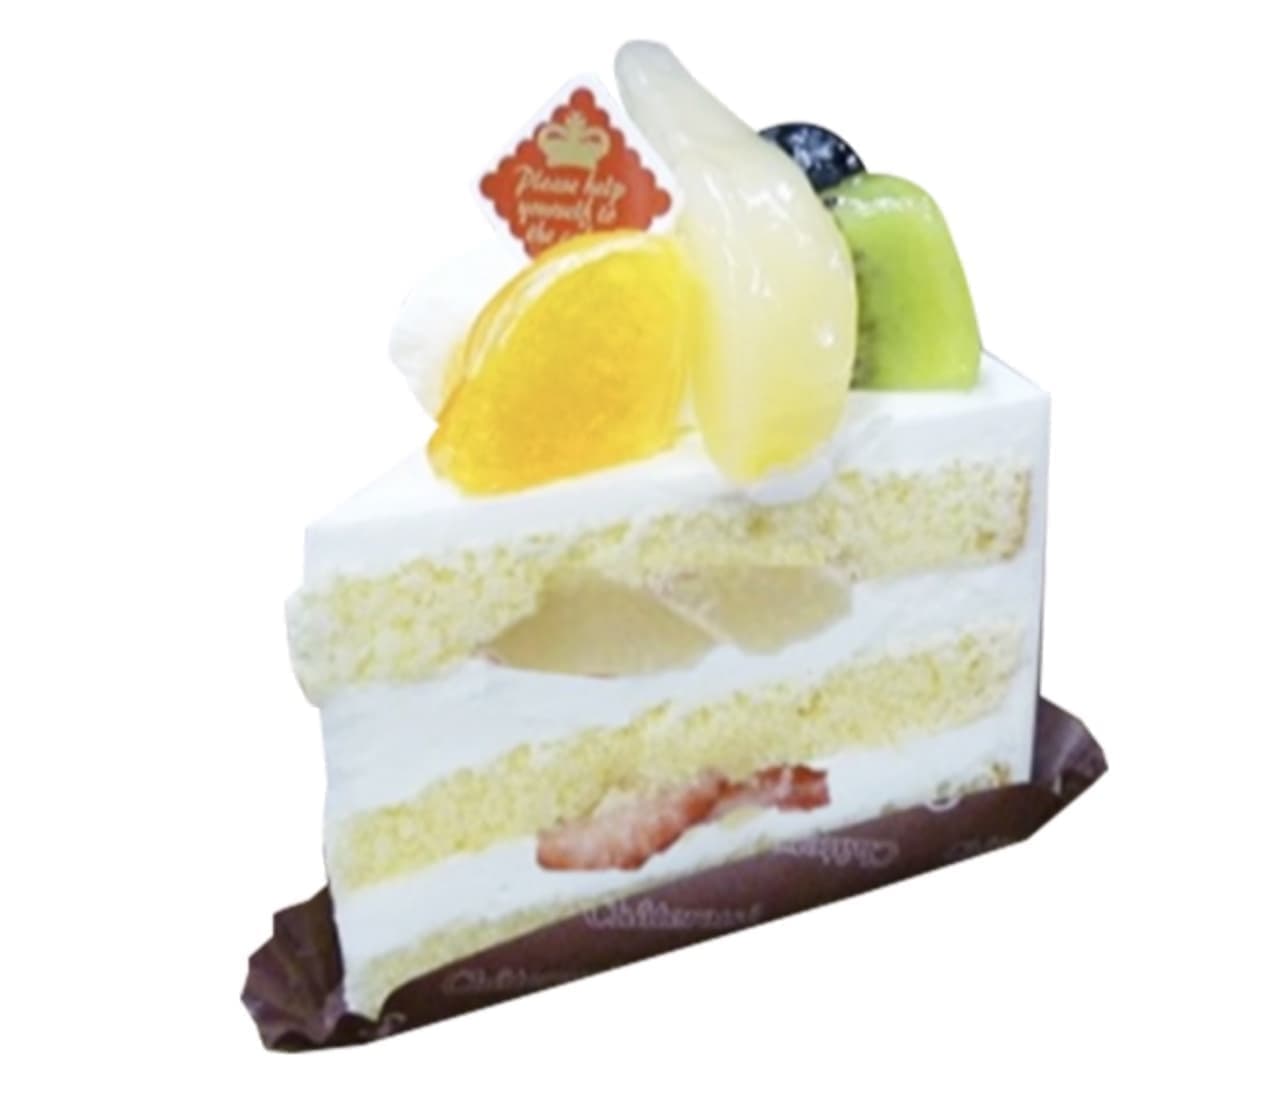 シャトレーゼ「洋梨とフルーツのプレミアム純生クリームショートケーキ」